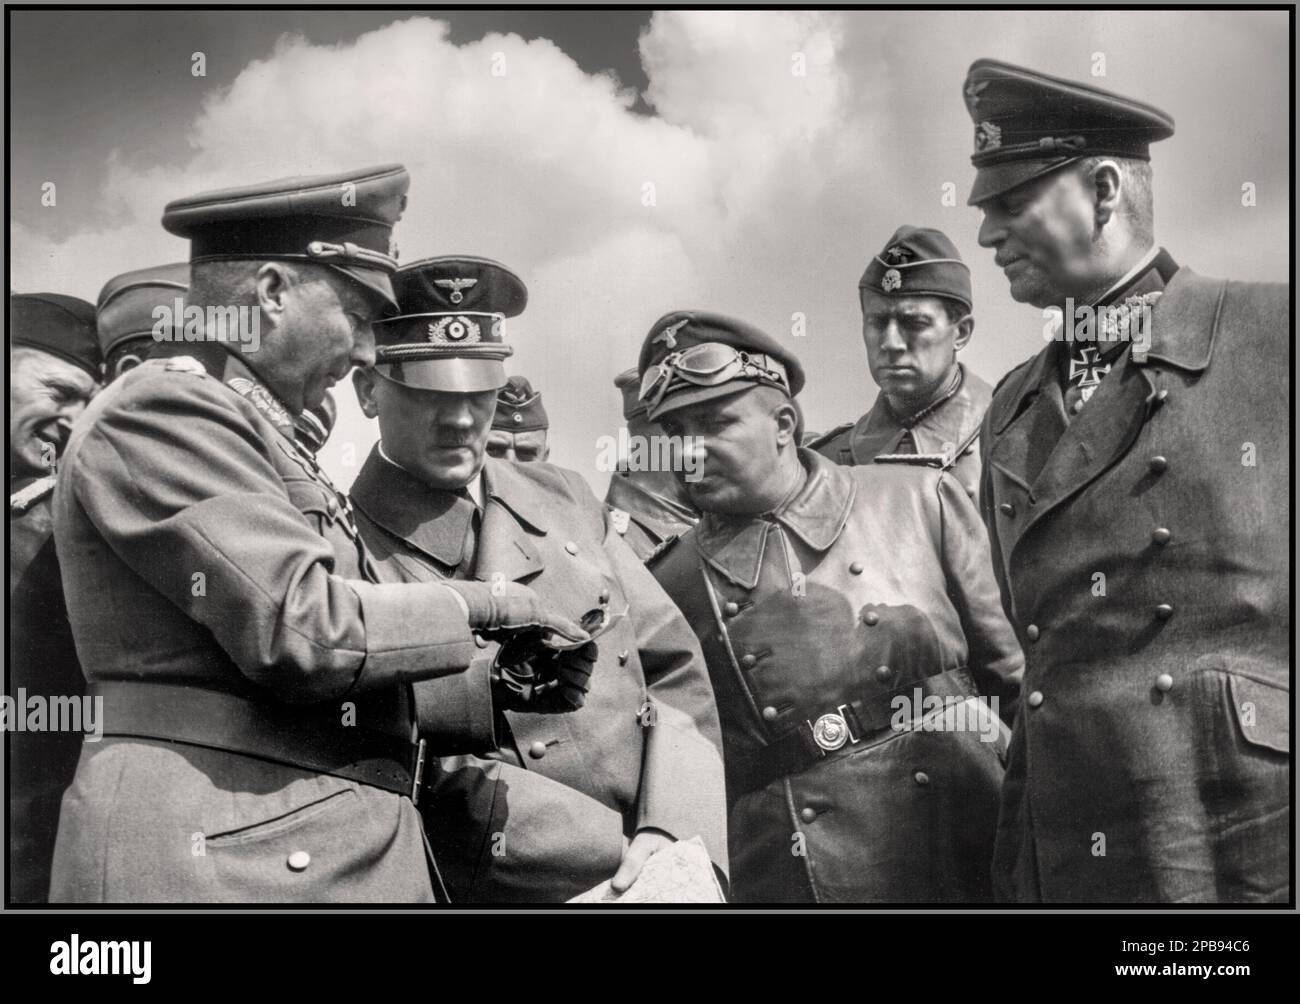 WW2 WESTERN FRONT Adolf Hitler an der Westfront bespricht die Situation mit seinen Nazi-SS- und Wehrmachtbeamten. Zu sehen sind unter anderem: General Gunther von Kluge (Vordergrund 1. von links), Wilhelm Keitel (1. von rechts). Abbildungen von Wilhelm Keitel, Gunther von Kluge, Adolf Hitler Datum März 1940 Stockfoto